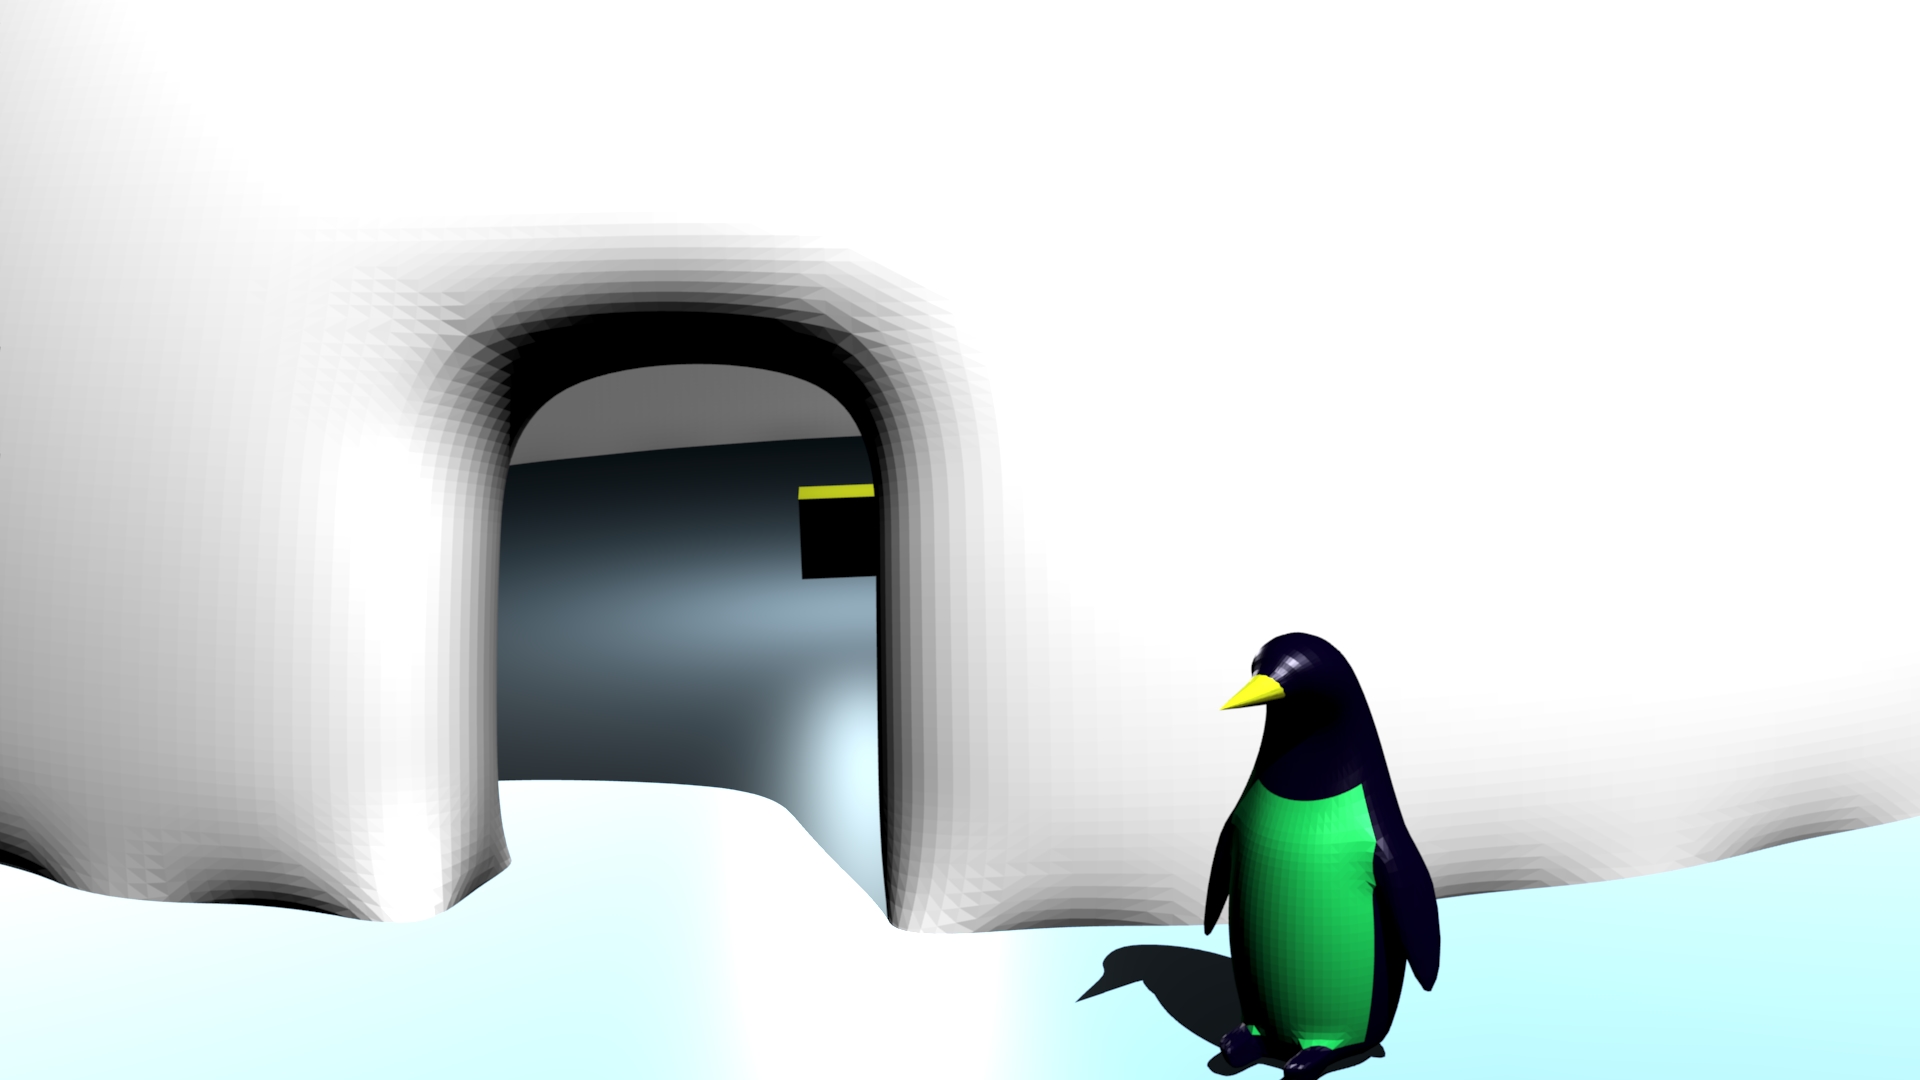 Penguin's House